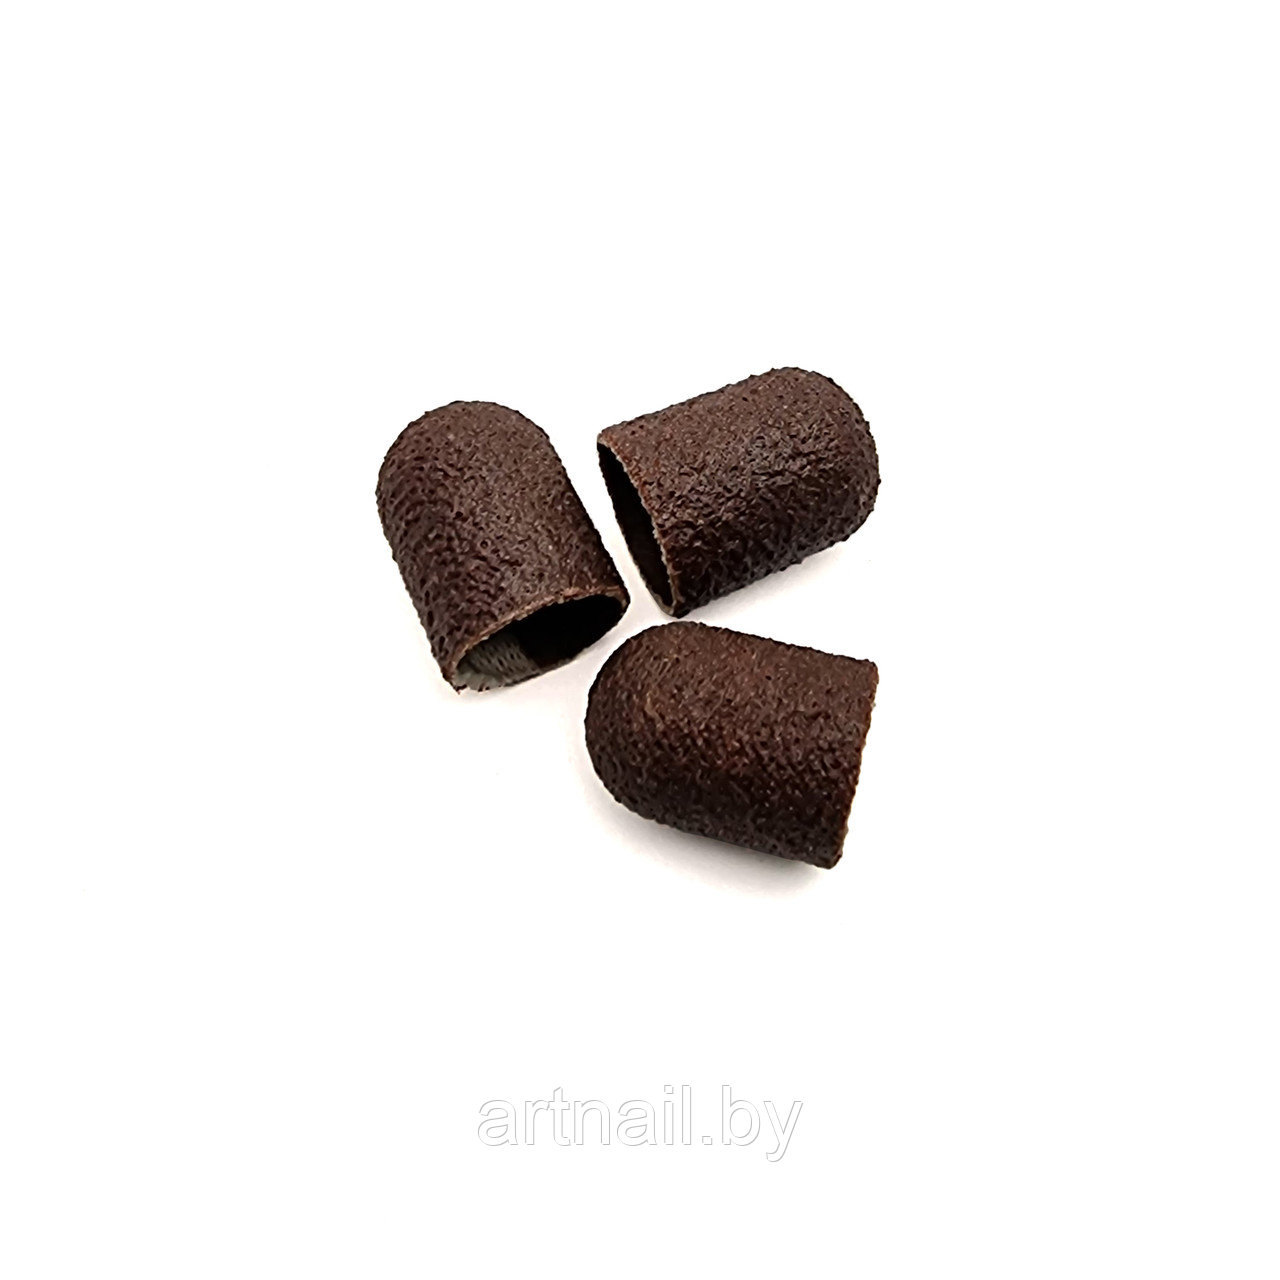 Колпачки Irisk песочные коричневые Ø10мм #180, 10шт